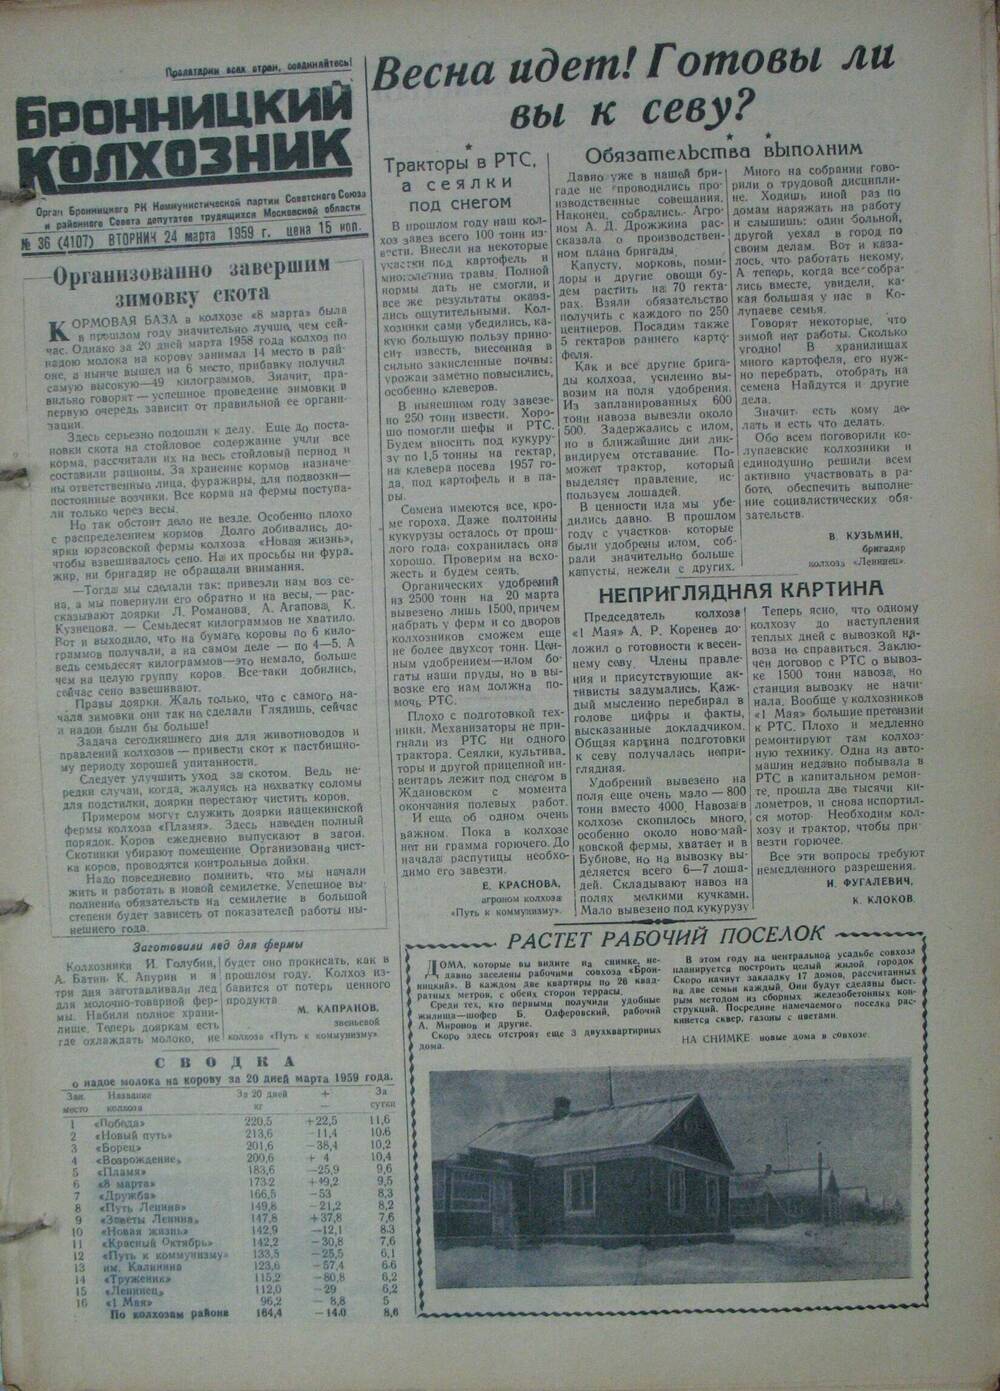 Бронницкий колхозник,  газета № 36 от 24 марта 1959г